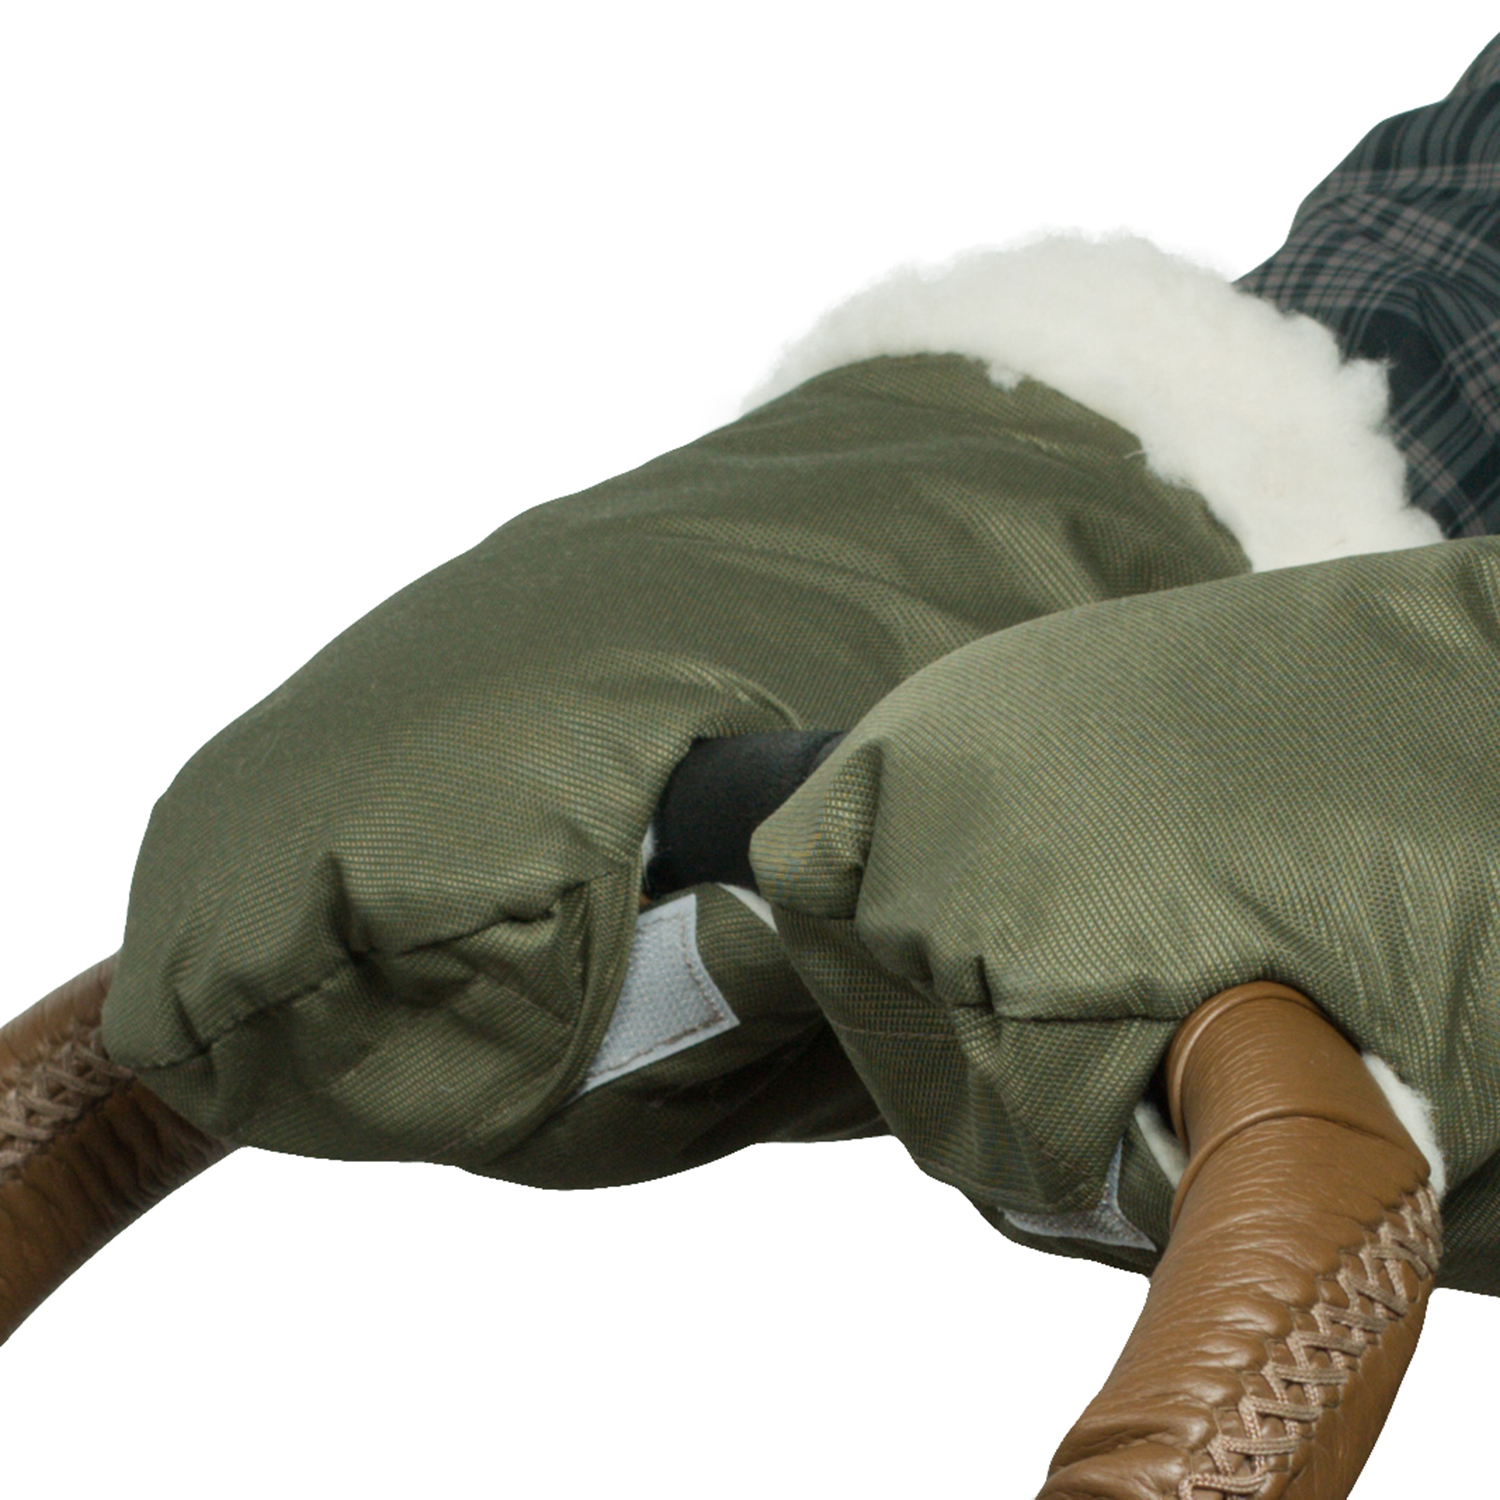 Муфта-рукавички для коляски Чудо-чадо меховая Прайм оливковая МРМ01-001 - фото 5